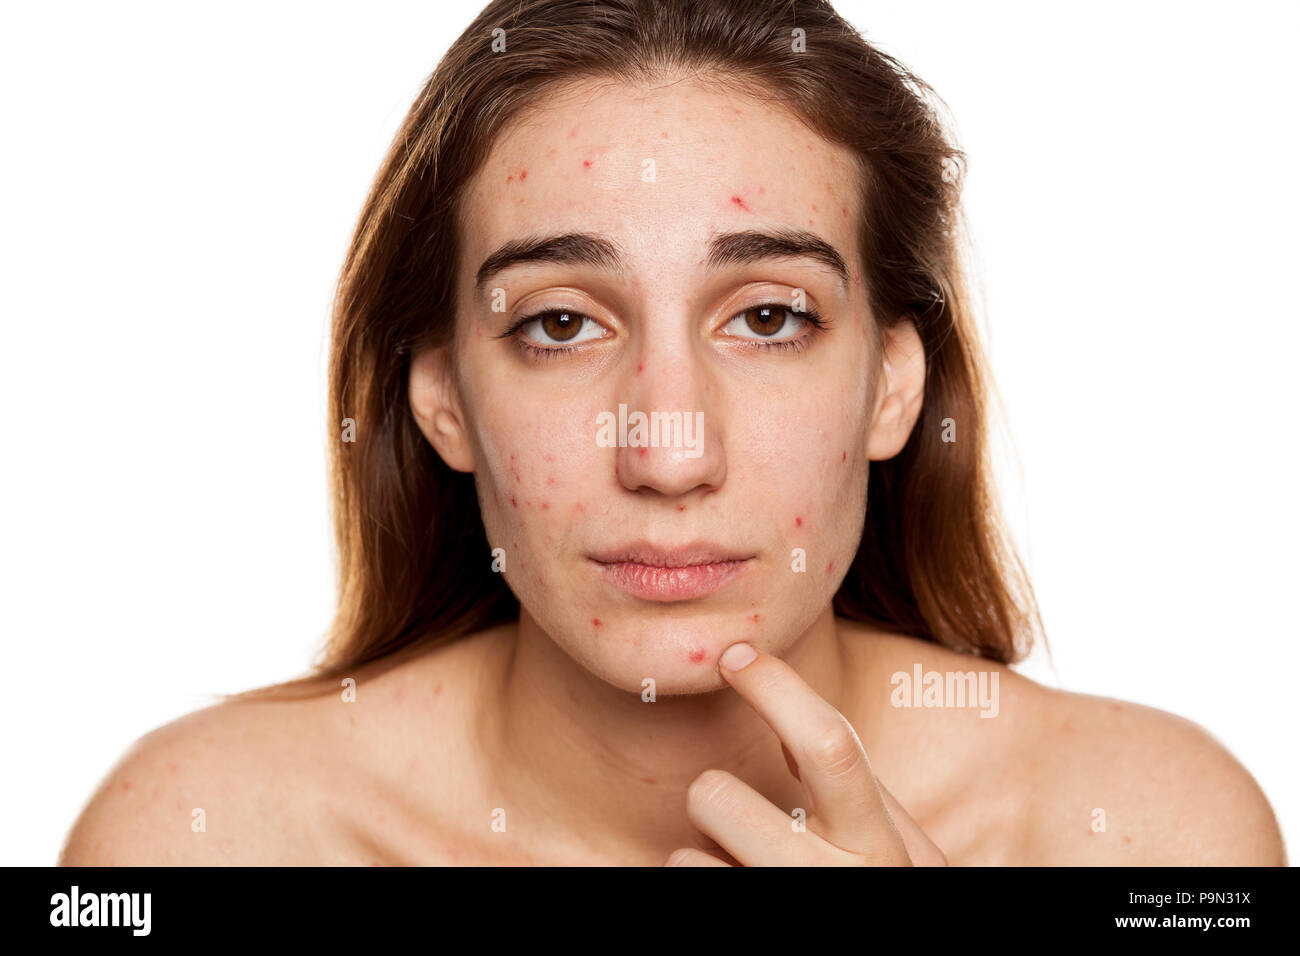 Junge Frau mit problematischer Haut und ohne Make-up Posen auf weißem Hintergrund Stockfoto